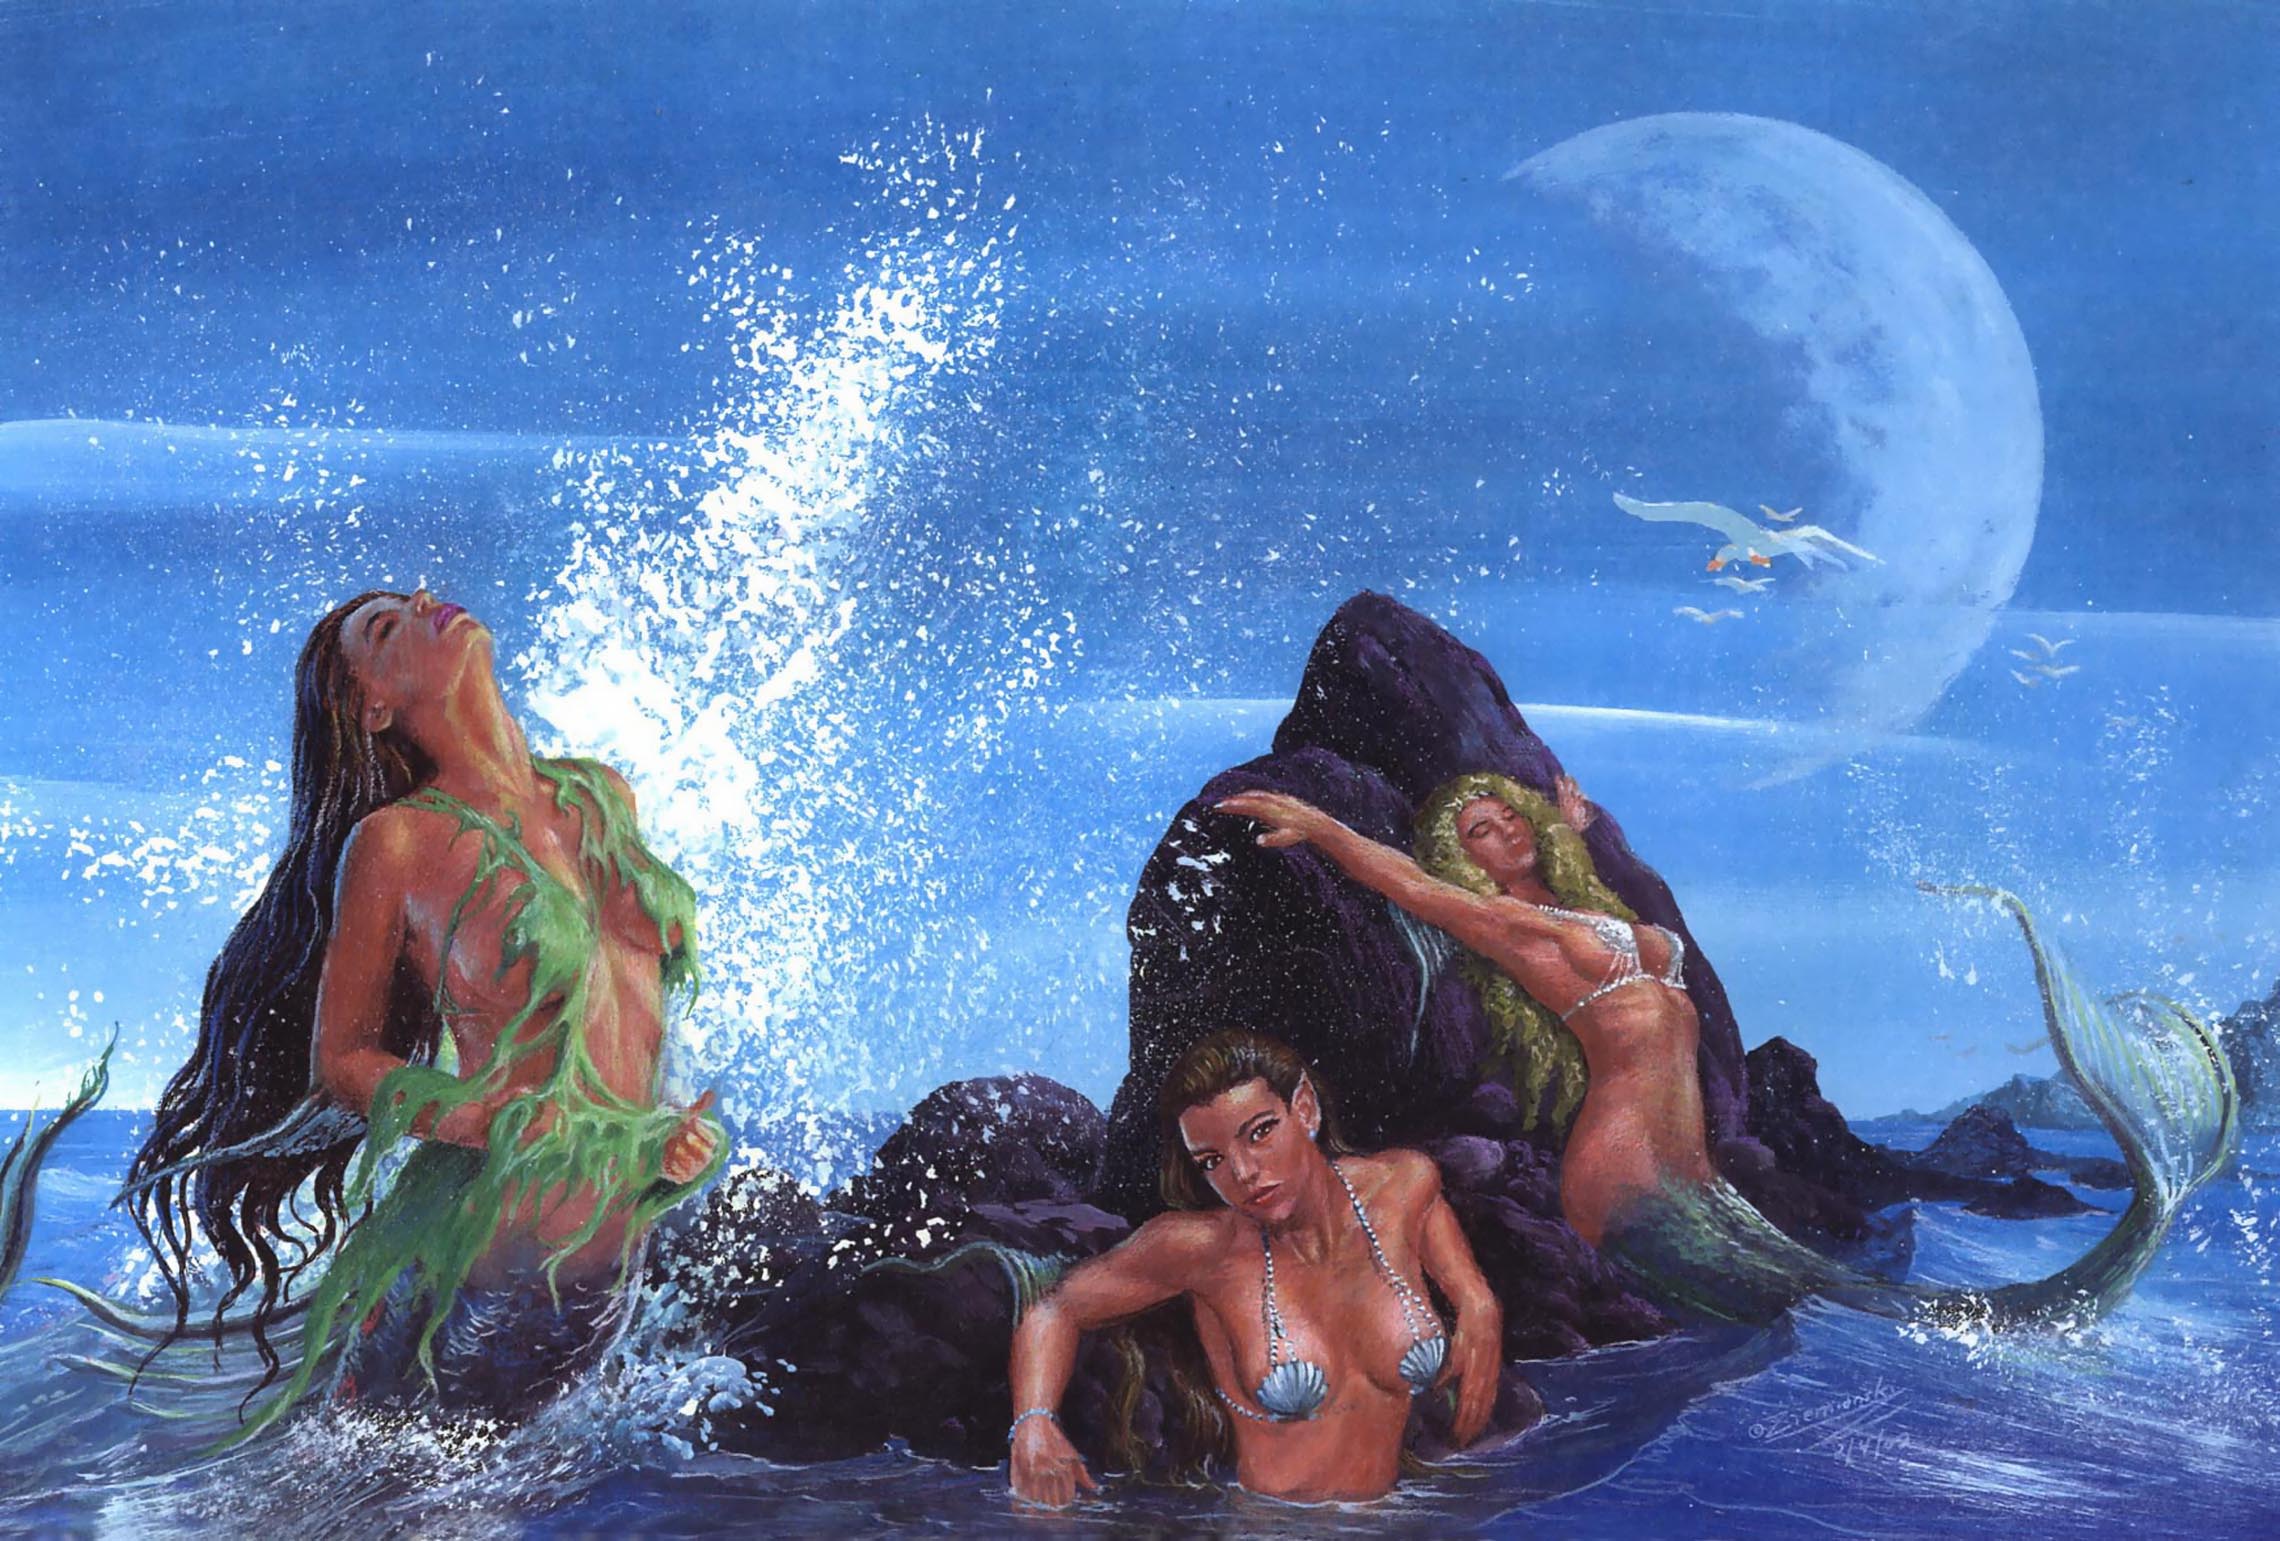 Sunbathing Mermaids